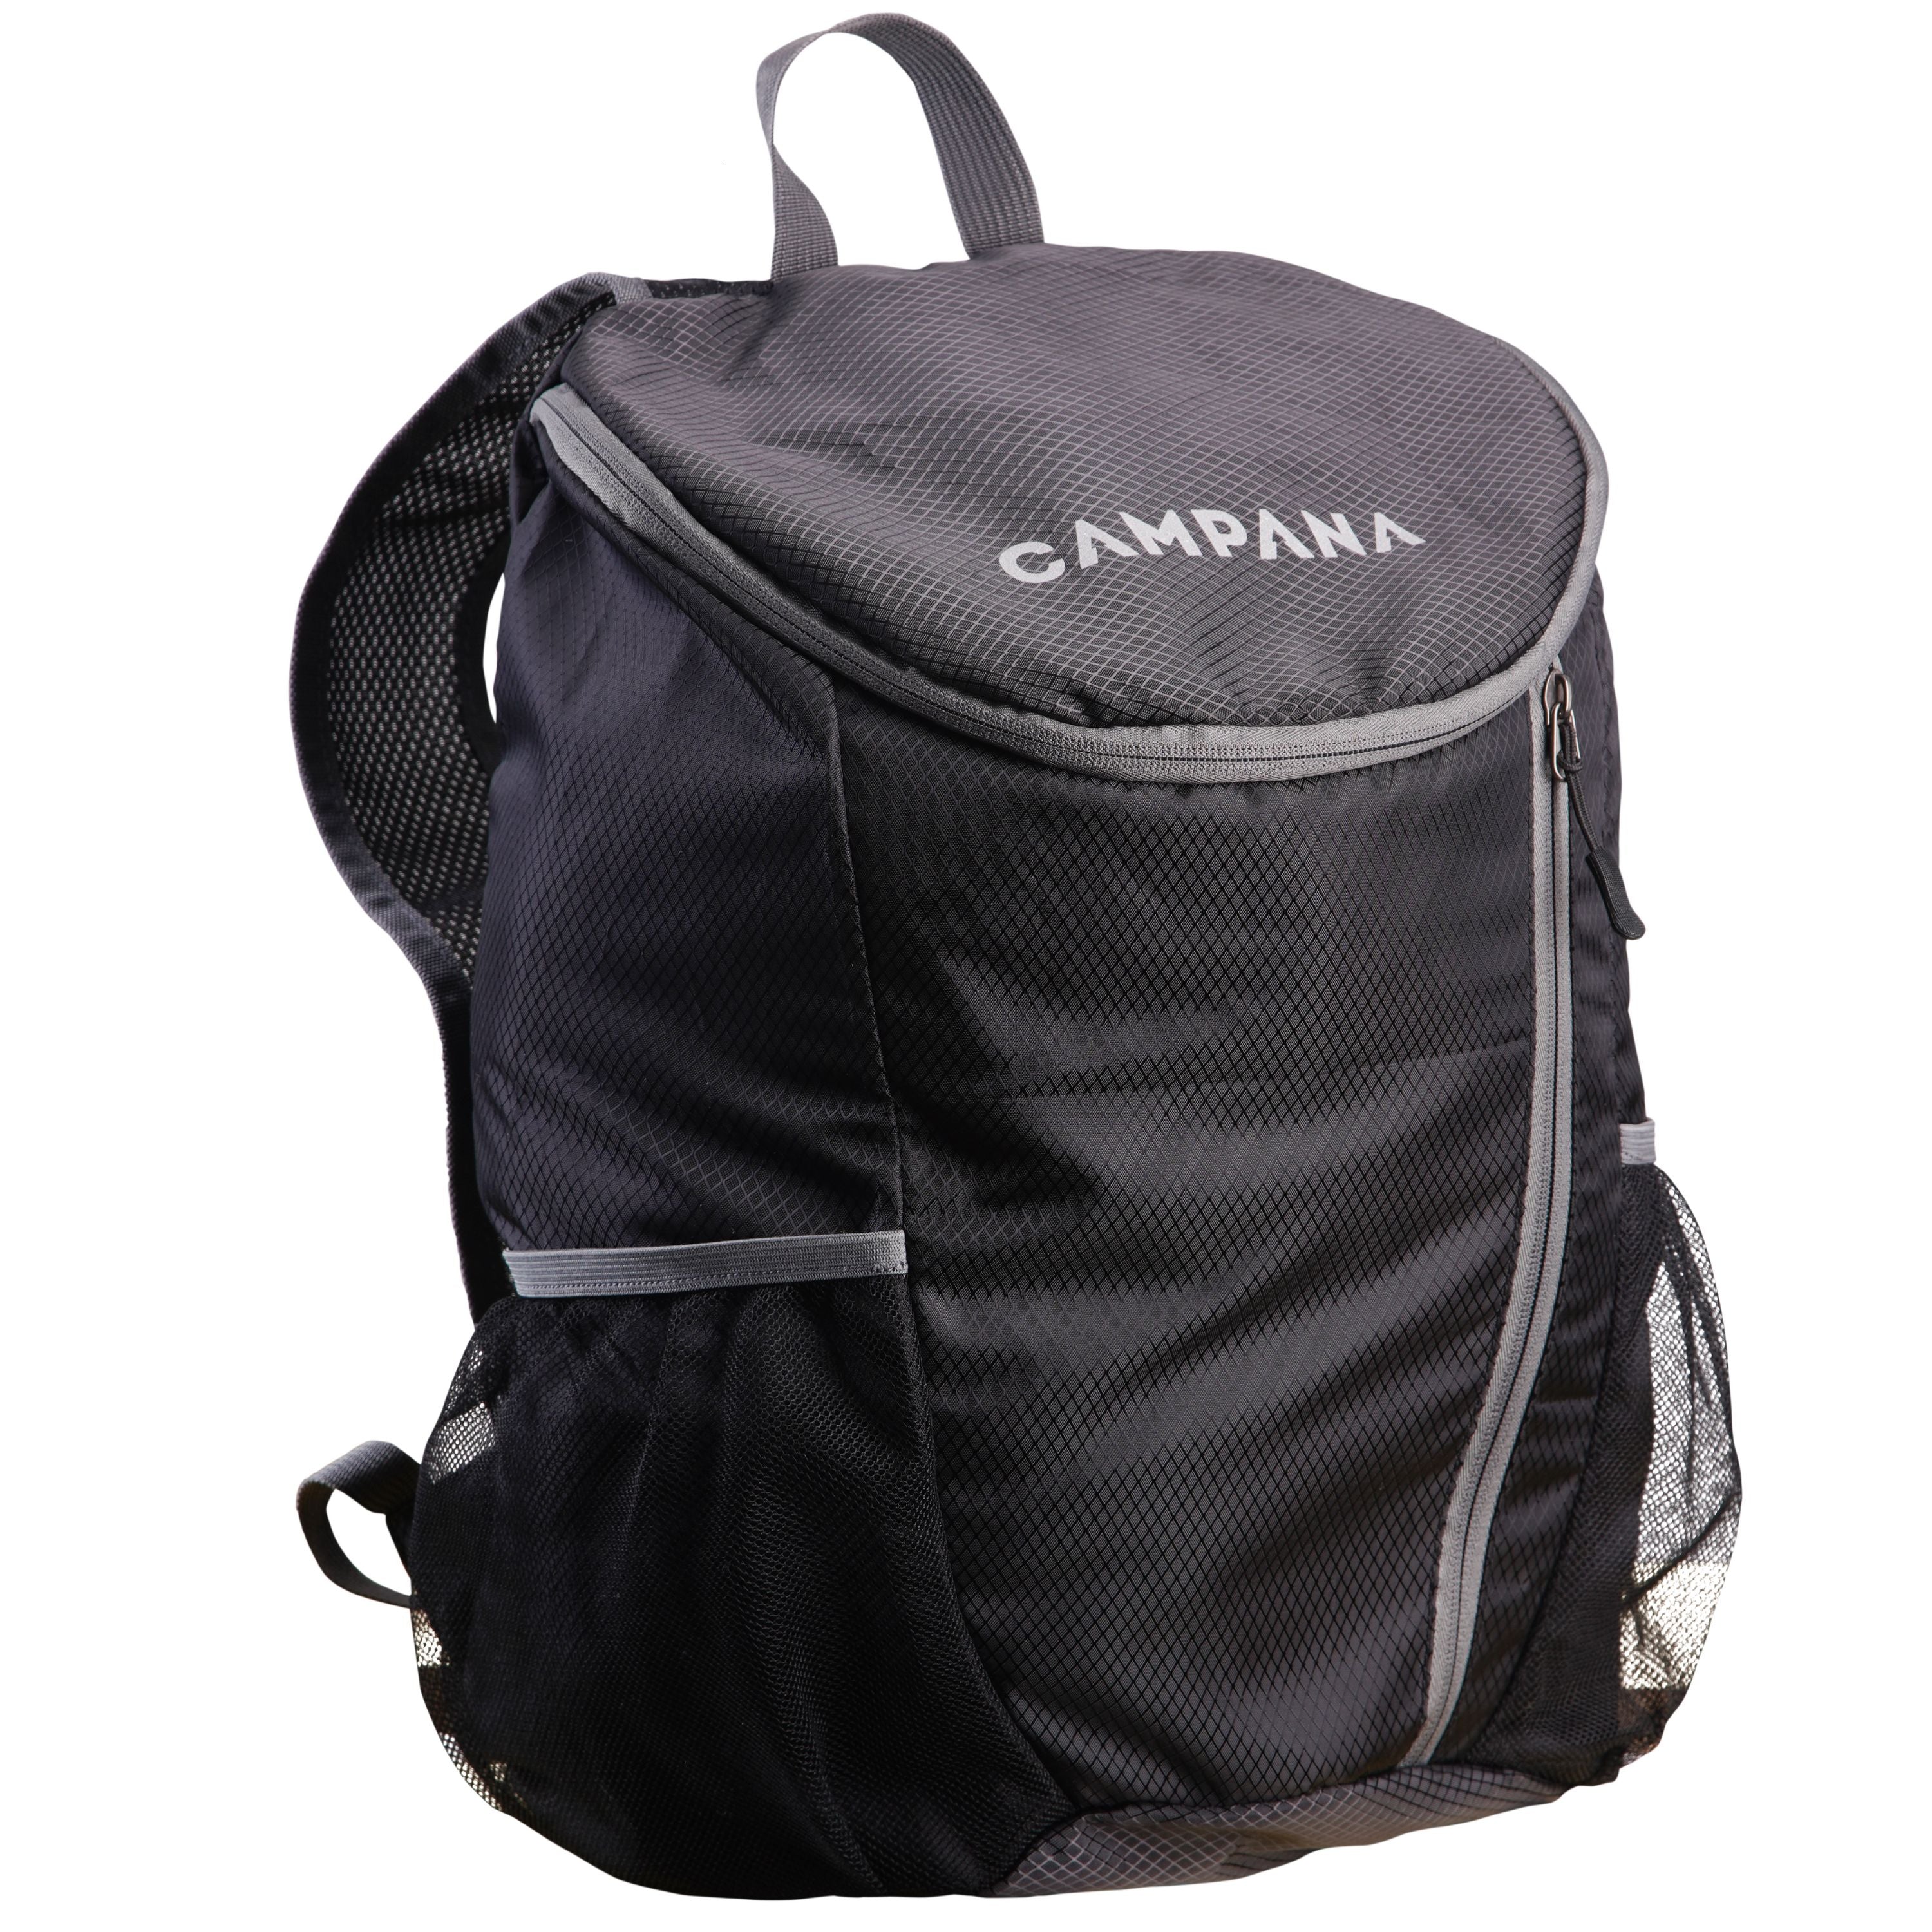 Ultra light backpack